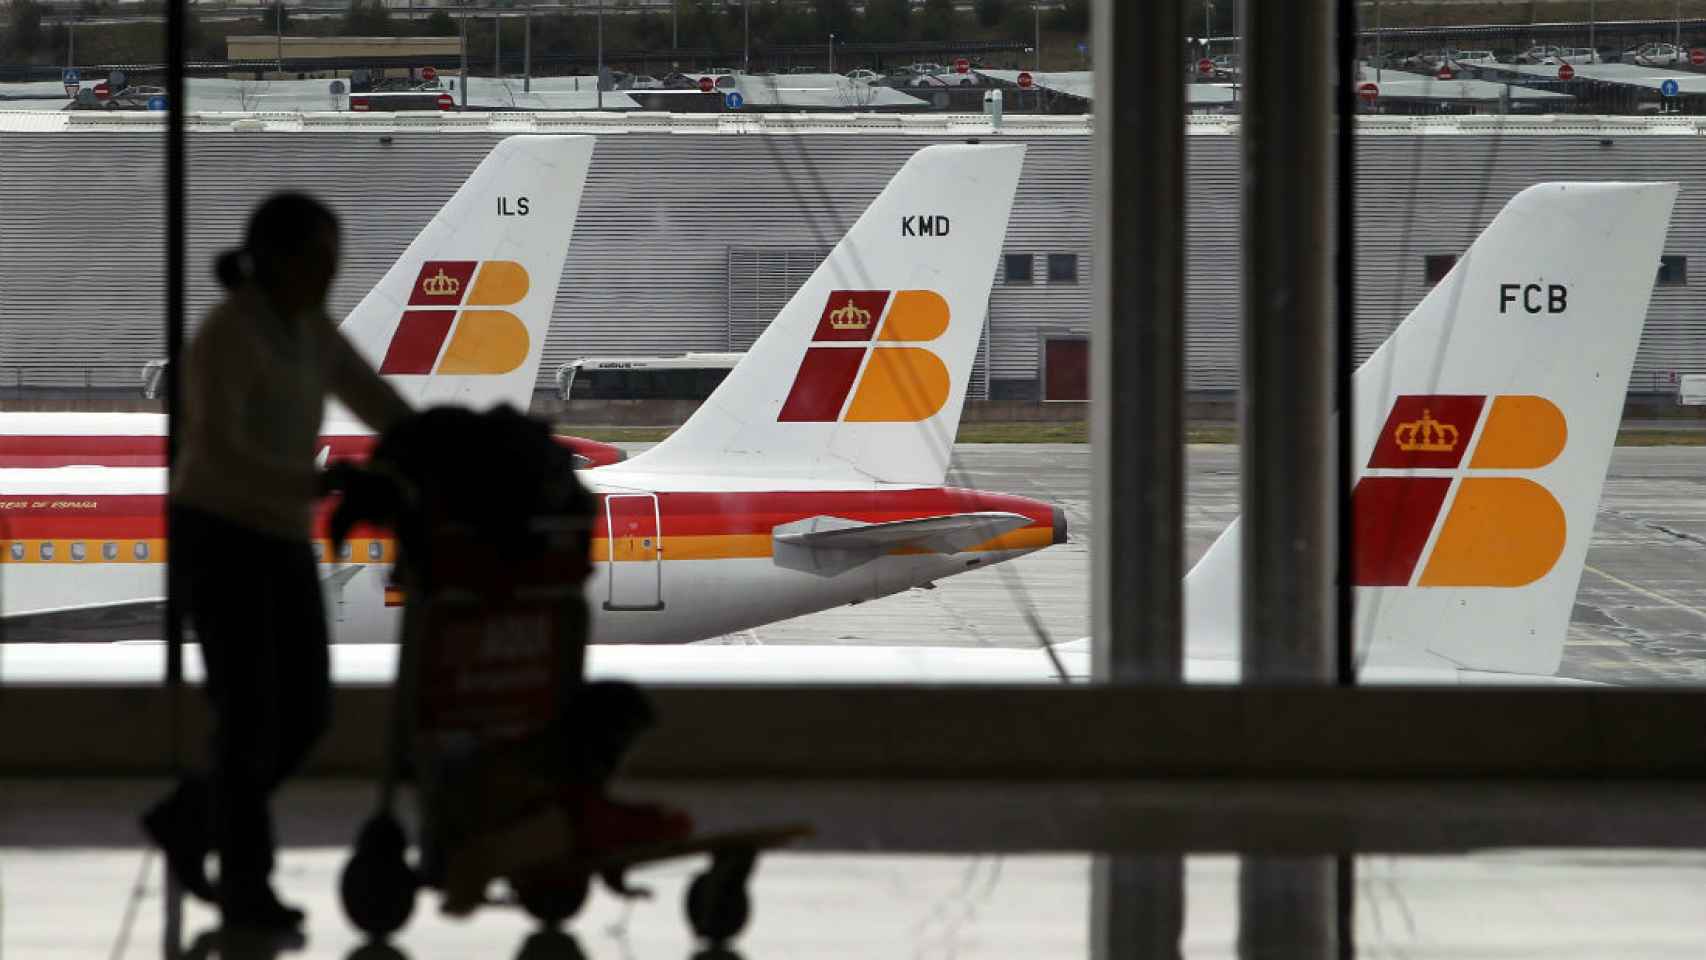 Un pasajero lleva su equipaje ante una hilera de aviones de Iberia. /